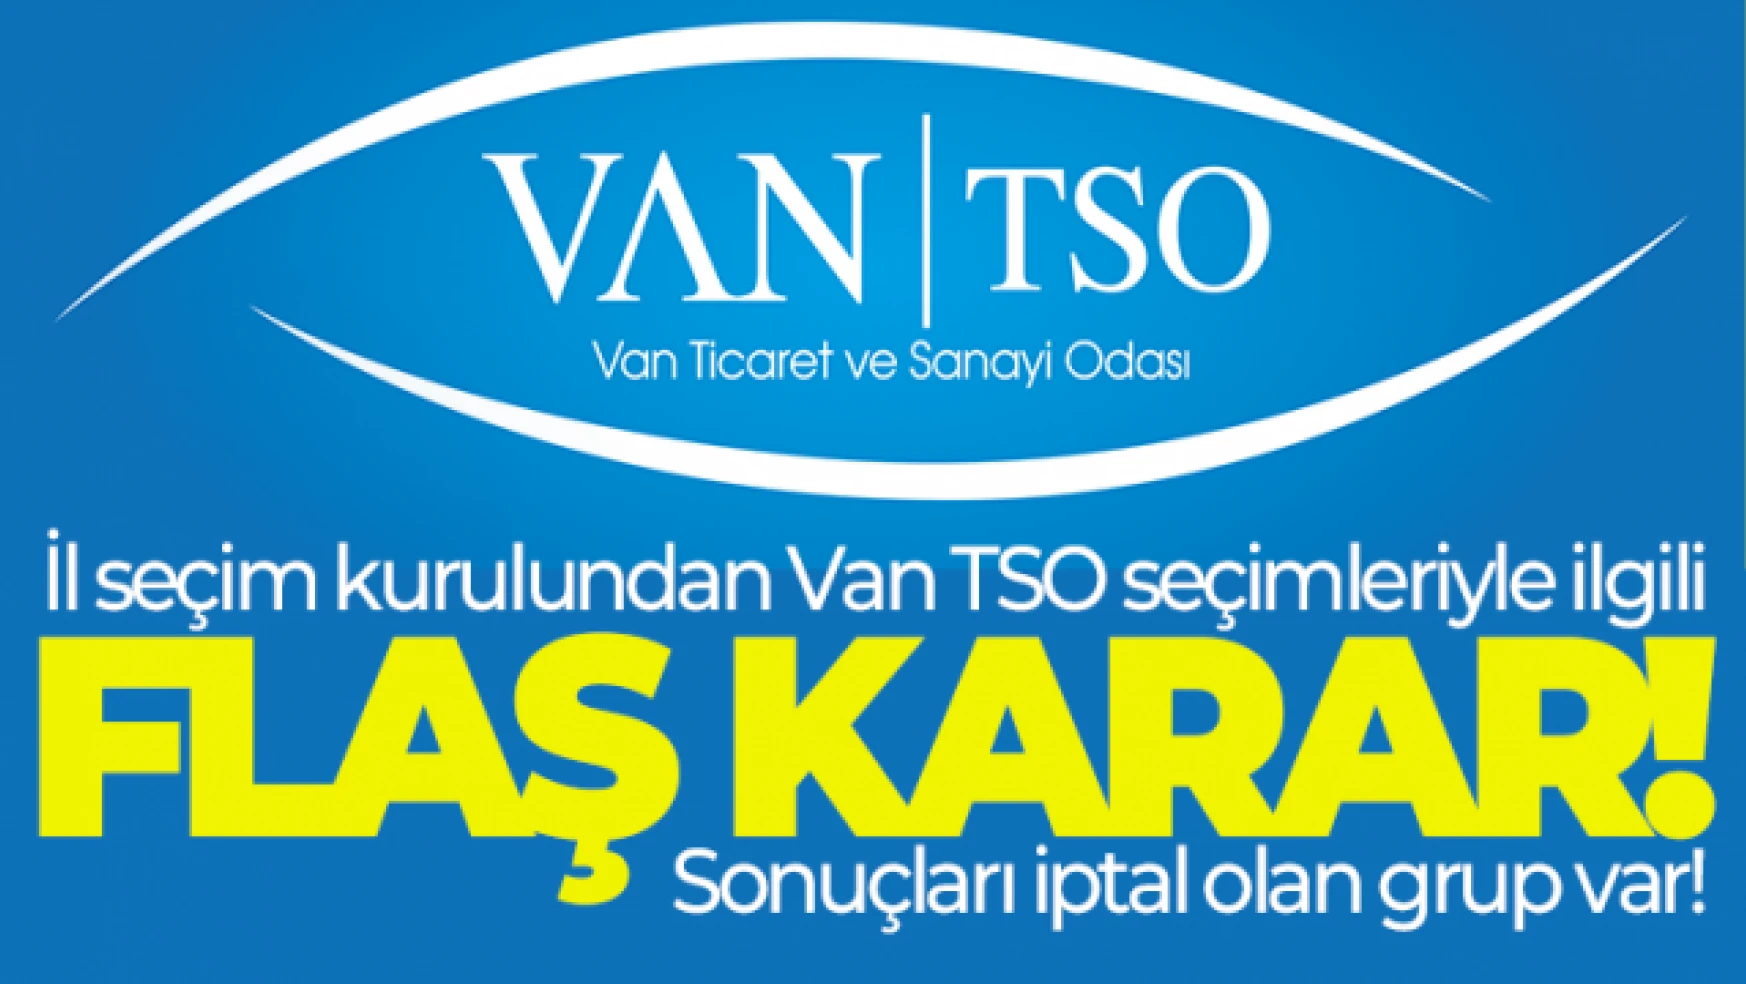 Seçim kurulundan Van TSO seçimiyle ilgili flaş karar!